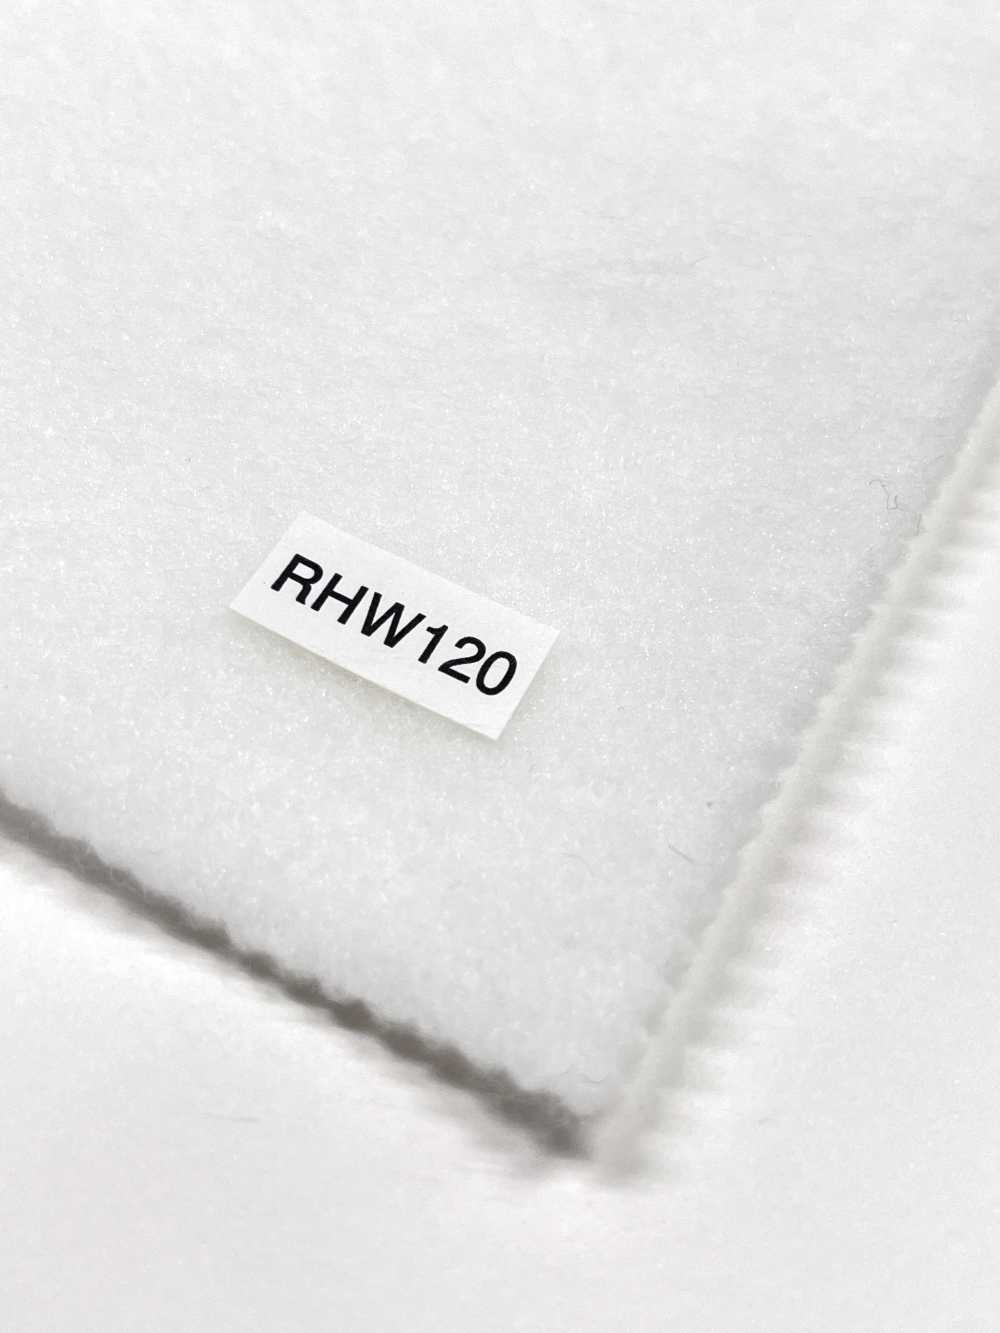 RHW120 Conbel NOWVEN(R) Domit Serie Schmelzbare Einlage Weicher Typ Conbel